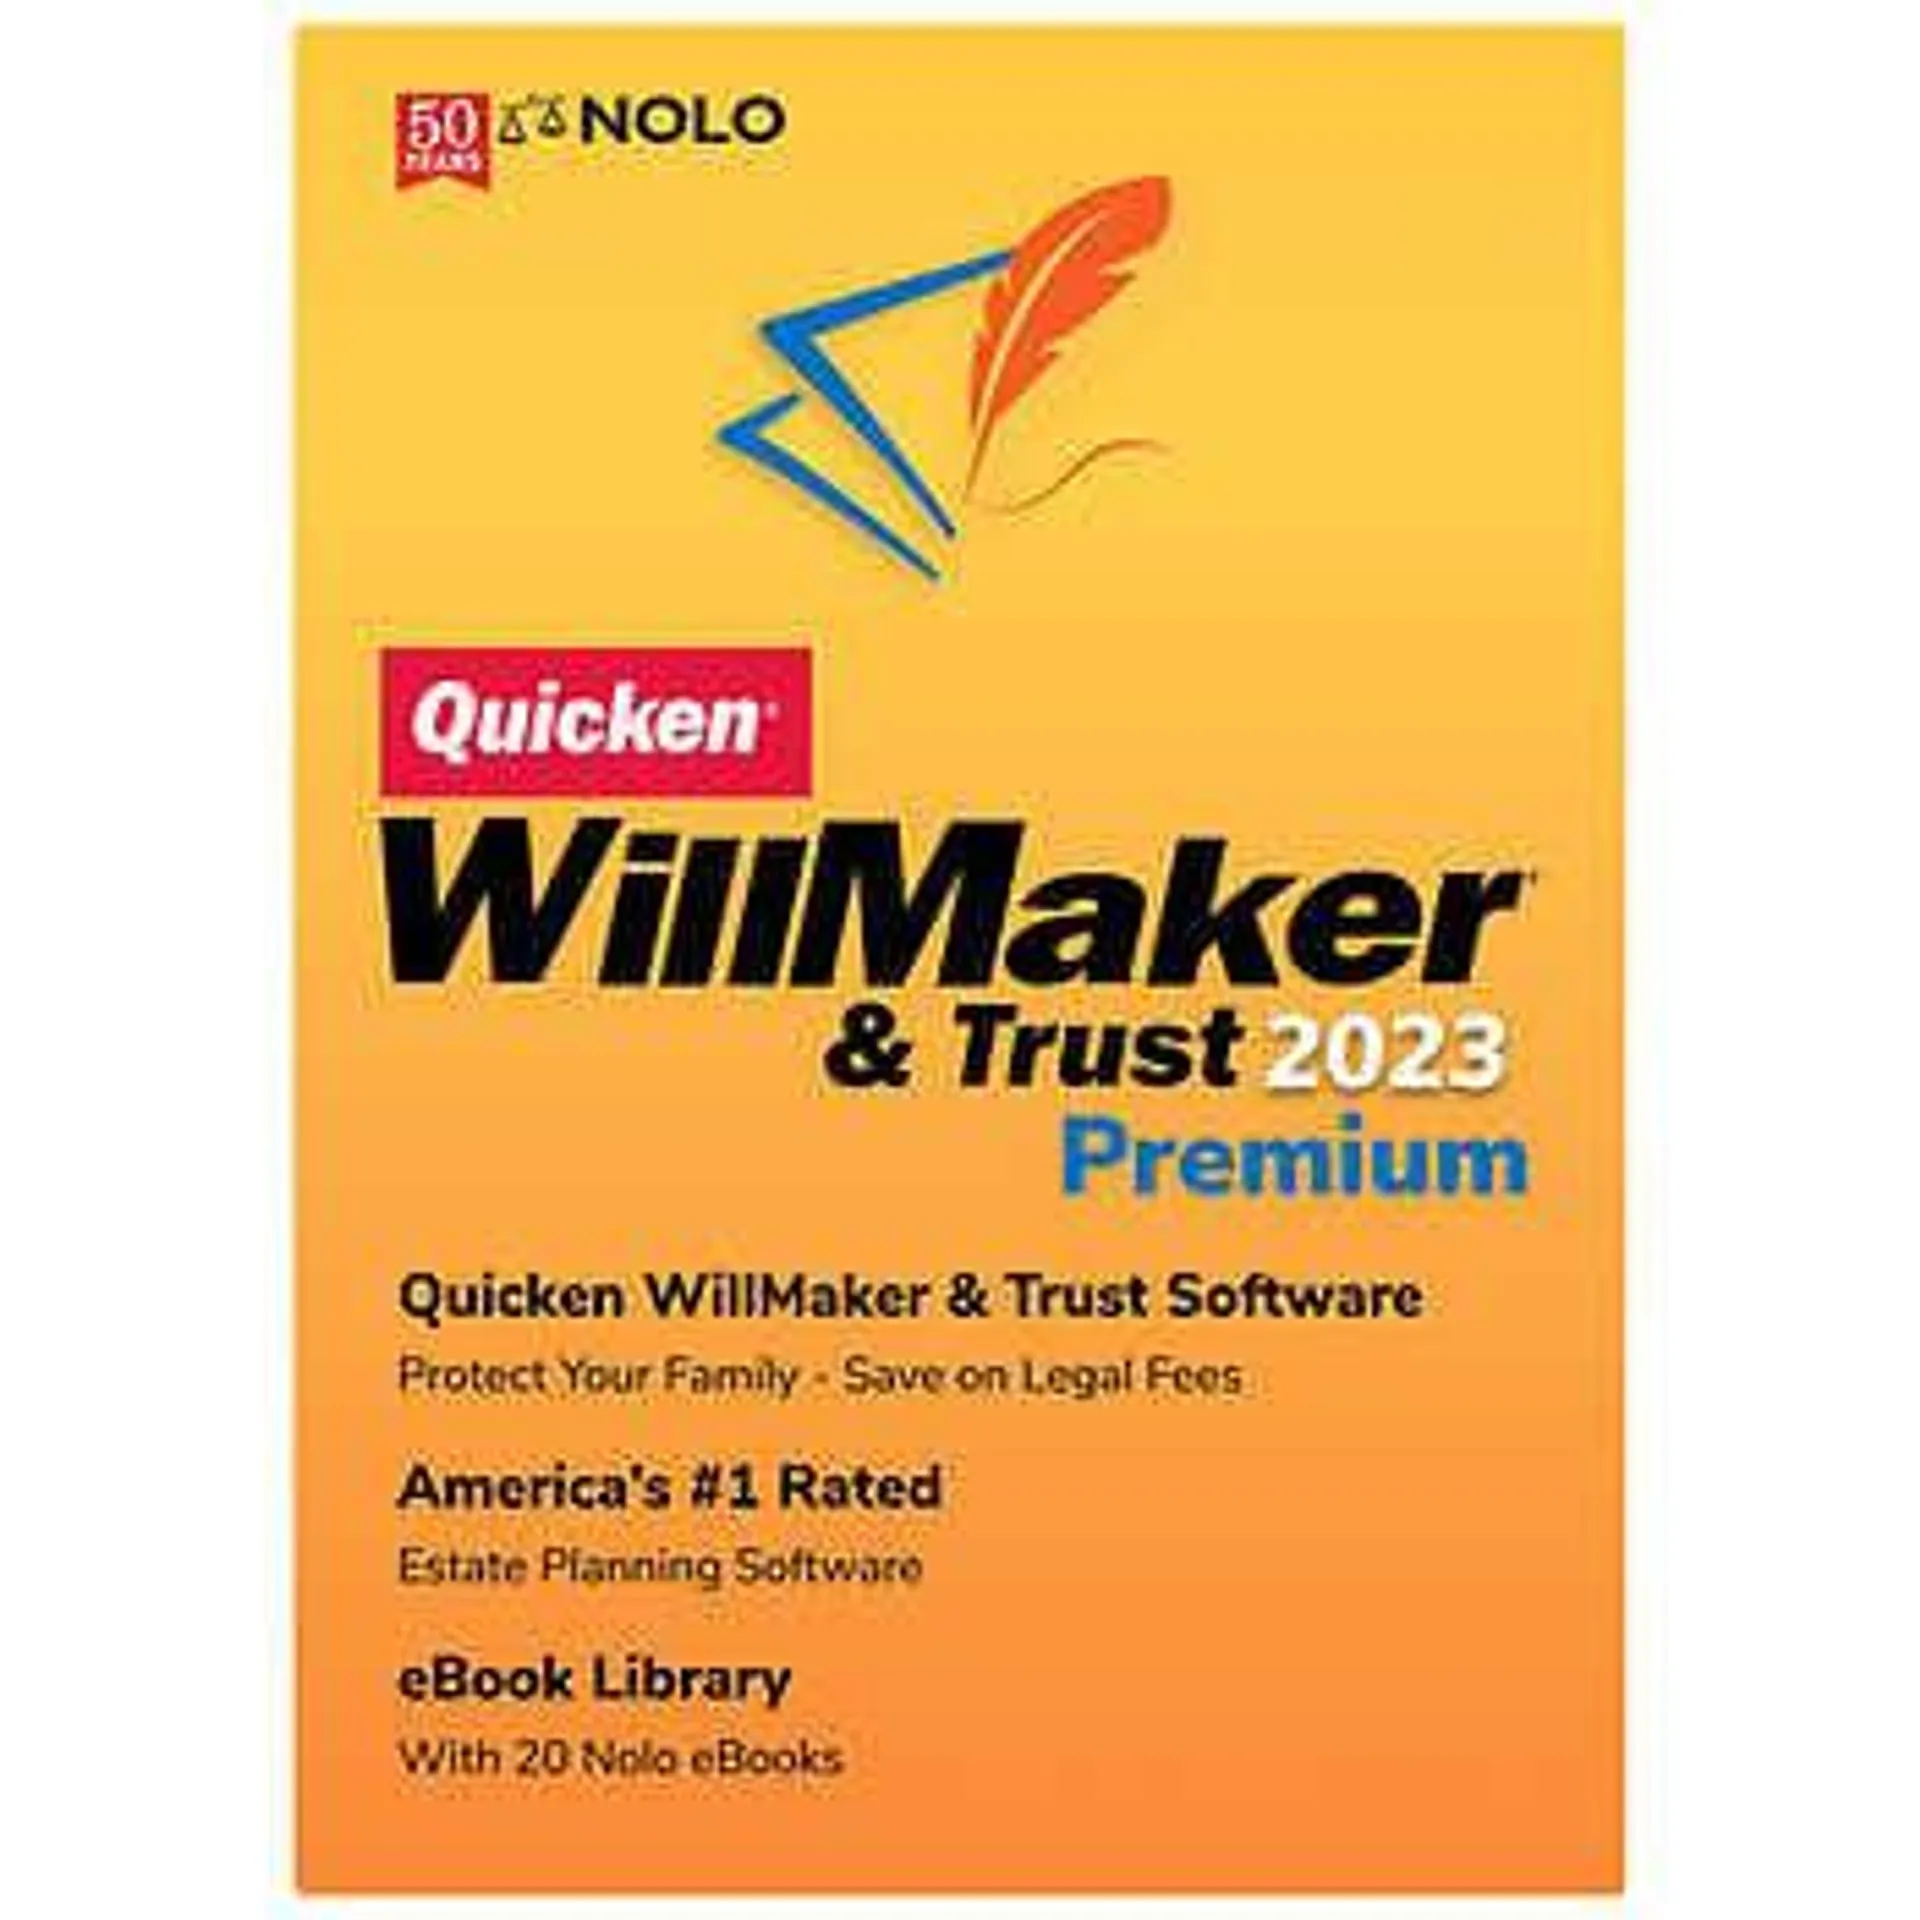 Quicken WillMaker & Trust 2023 Premium, PC or MAC (E-Delivery)